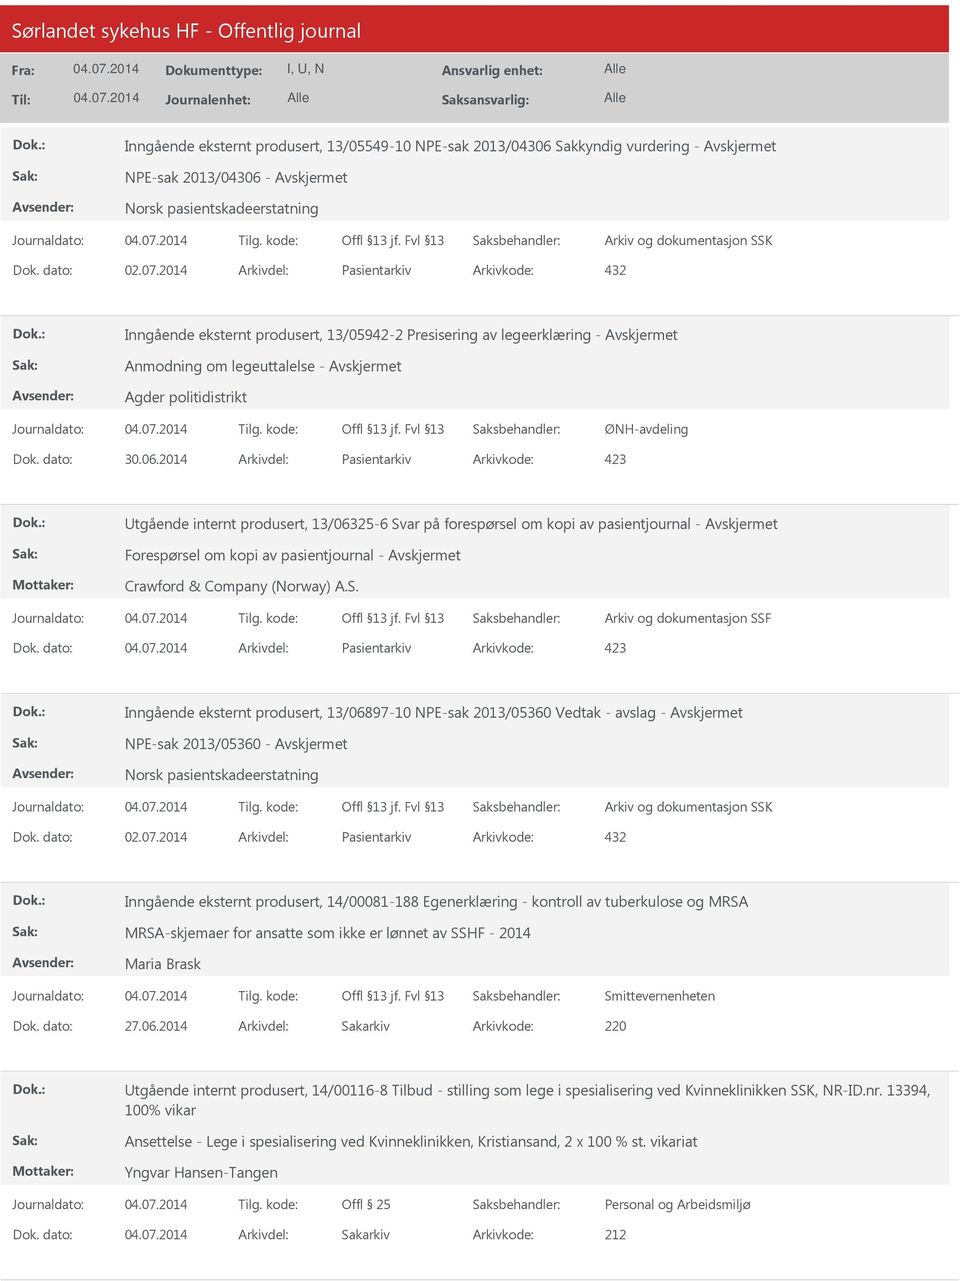 2014 Arkivdel: Pasientarkiv Arkivkode: 423 tgående internt produsert, 13/06325-6 Svar på forespørsel om kopi av pasientjournal - Forespørsel om kopi av pasientjournal - Crawford & Company (Norway) A.